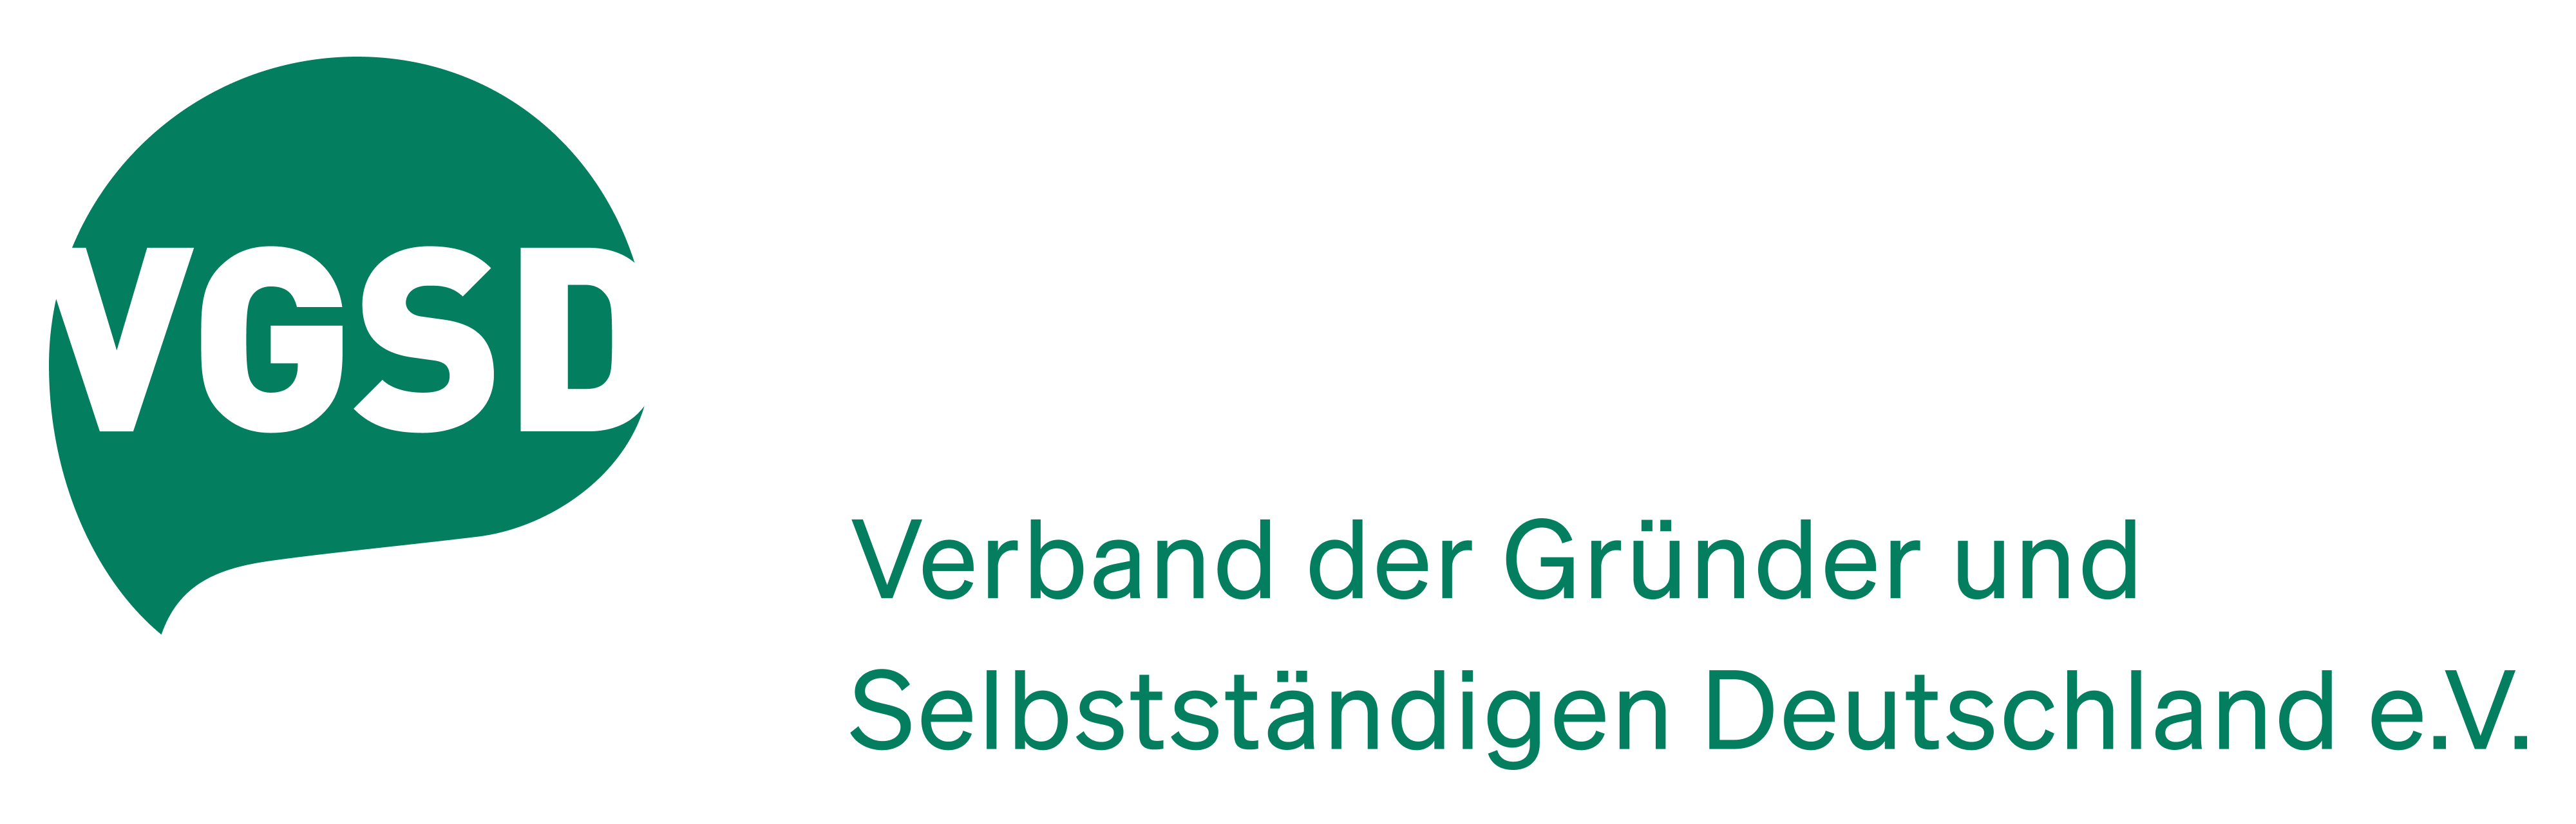 Mitglied im Verband der Gründer und Selbständigen Deutschland e.V.